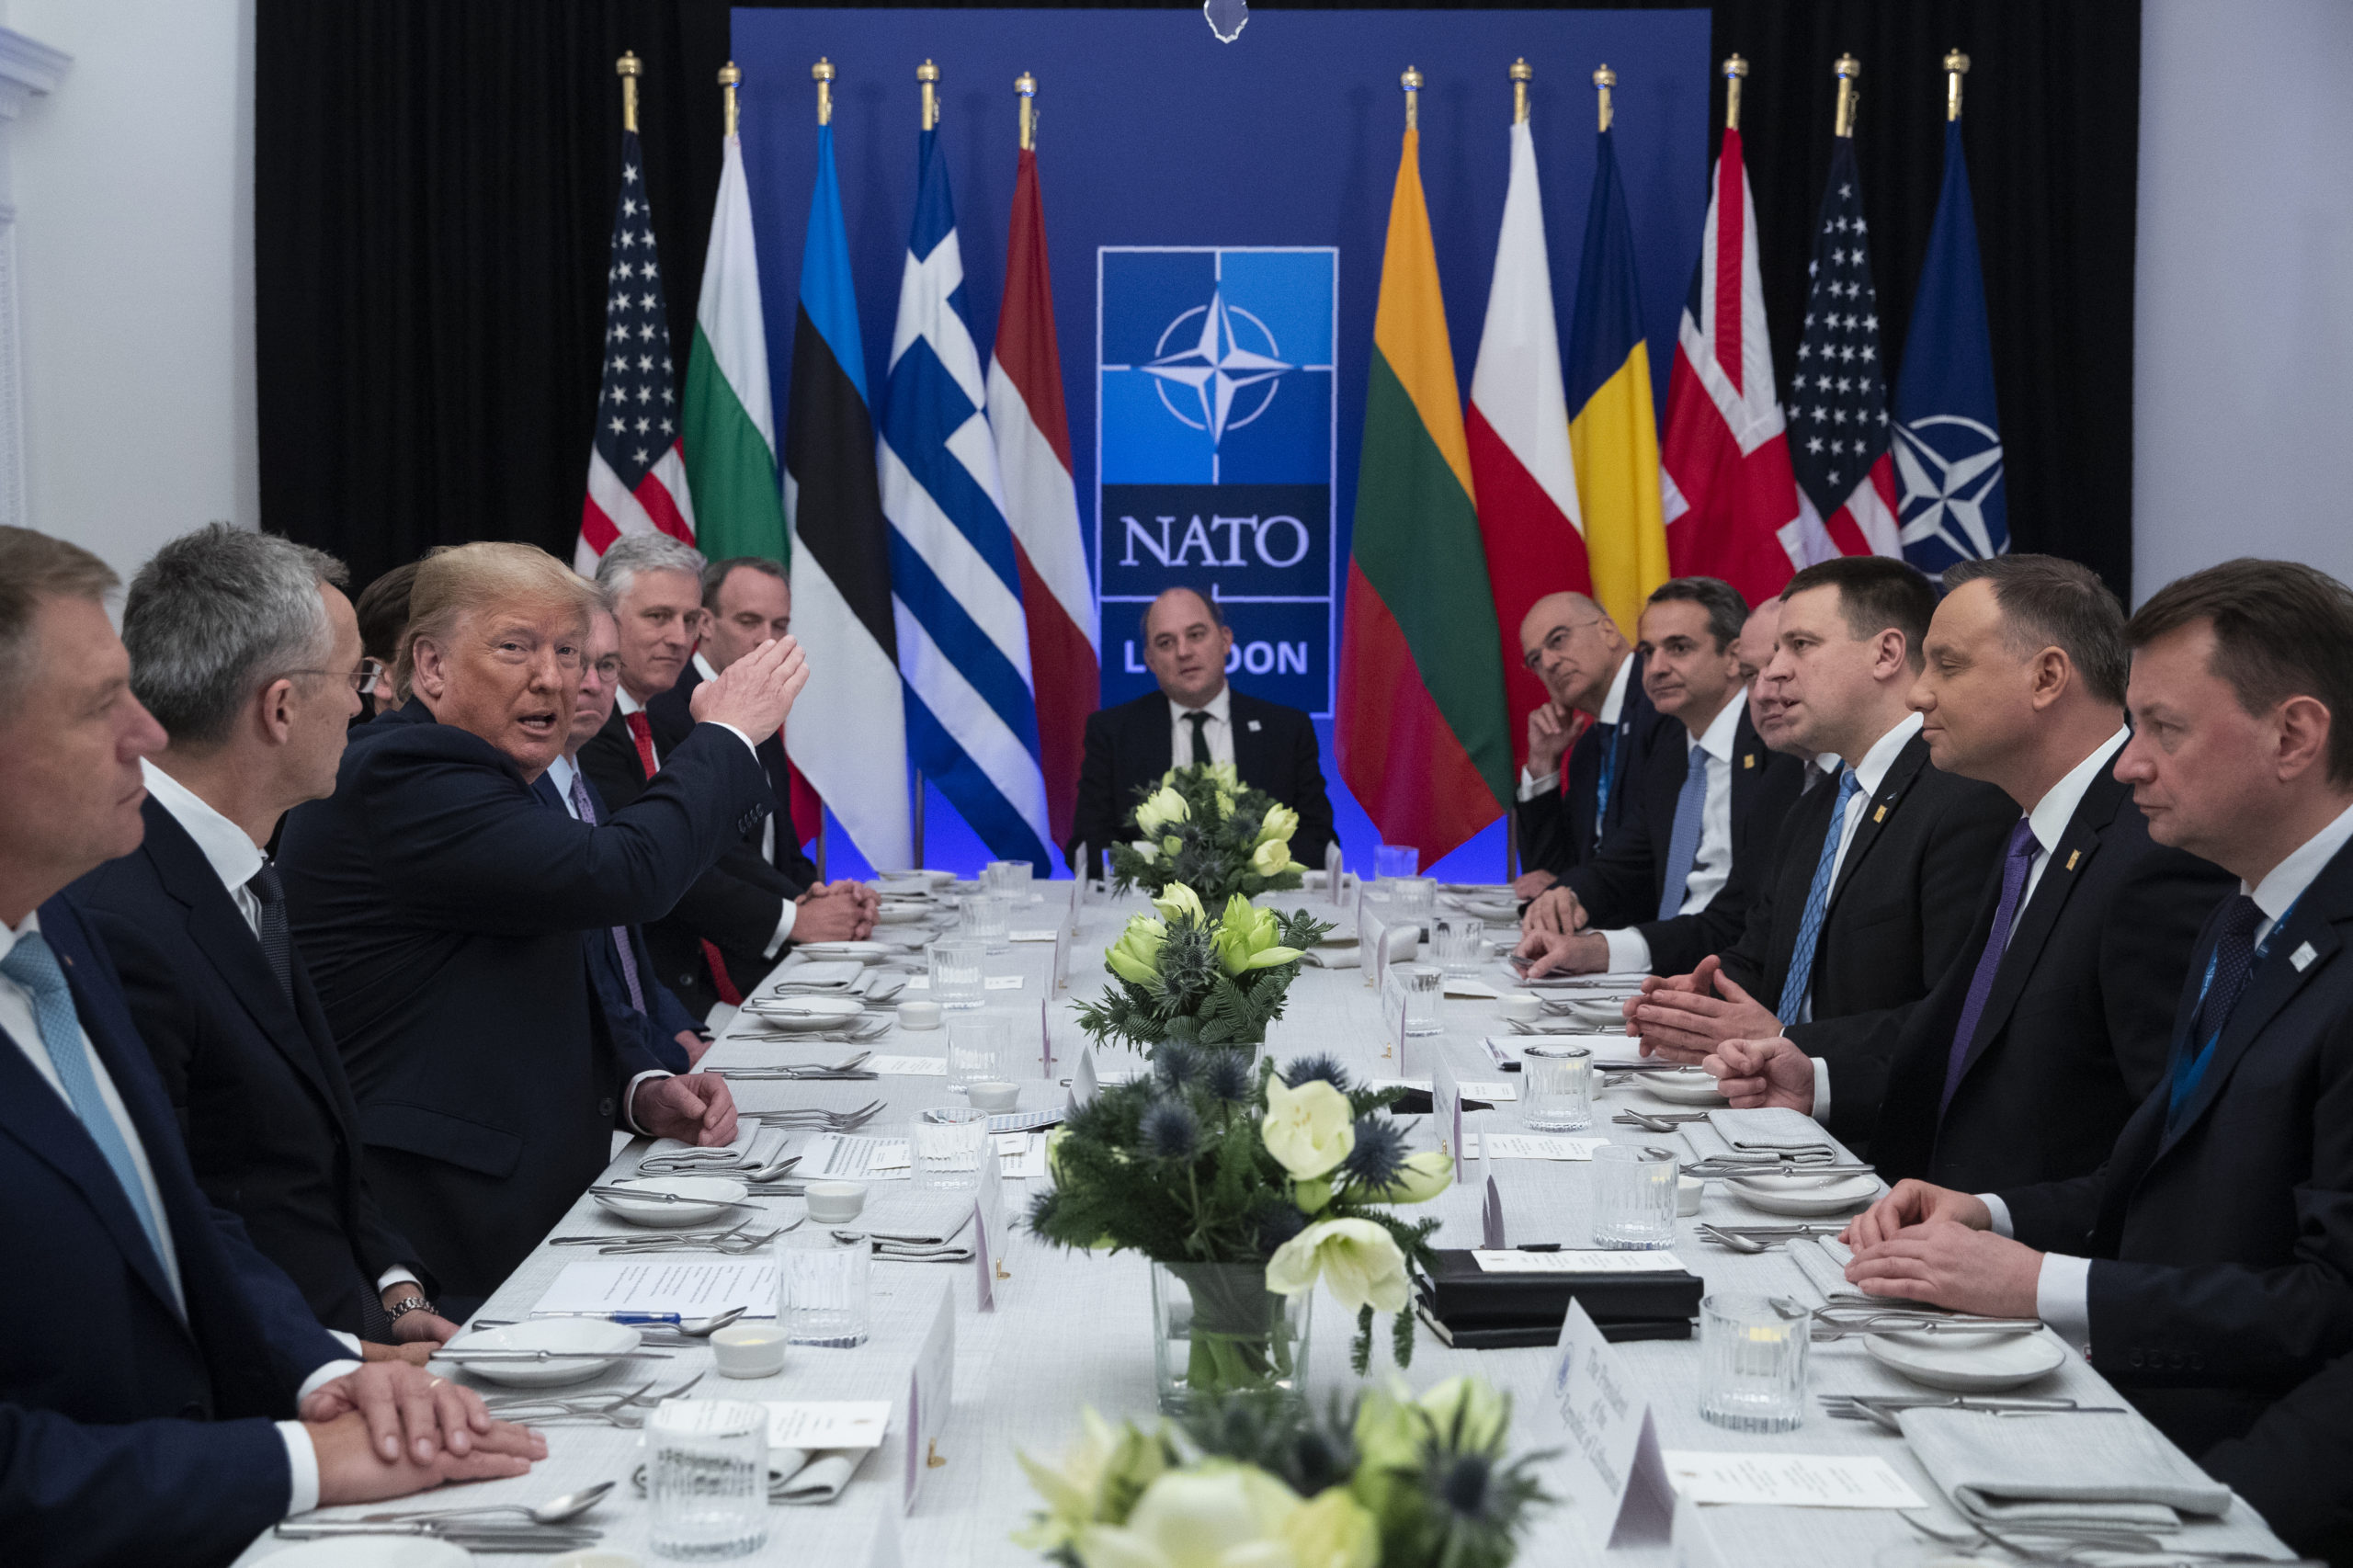 Вызов нато. Североатлантический Альянс НАТО. NATO (North Atlantic Treaty Organization) - Североатлантический военный Альянс (НАТО).. Саммит НАТО 1999. Саммит Альянса НАТО.